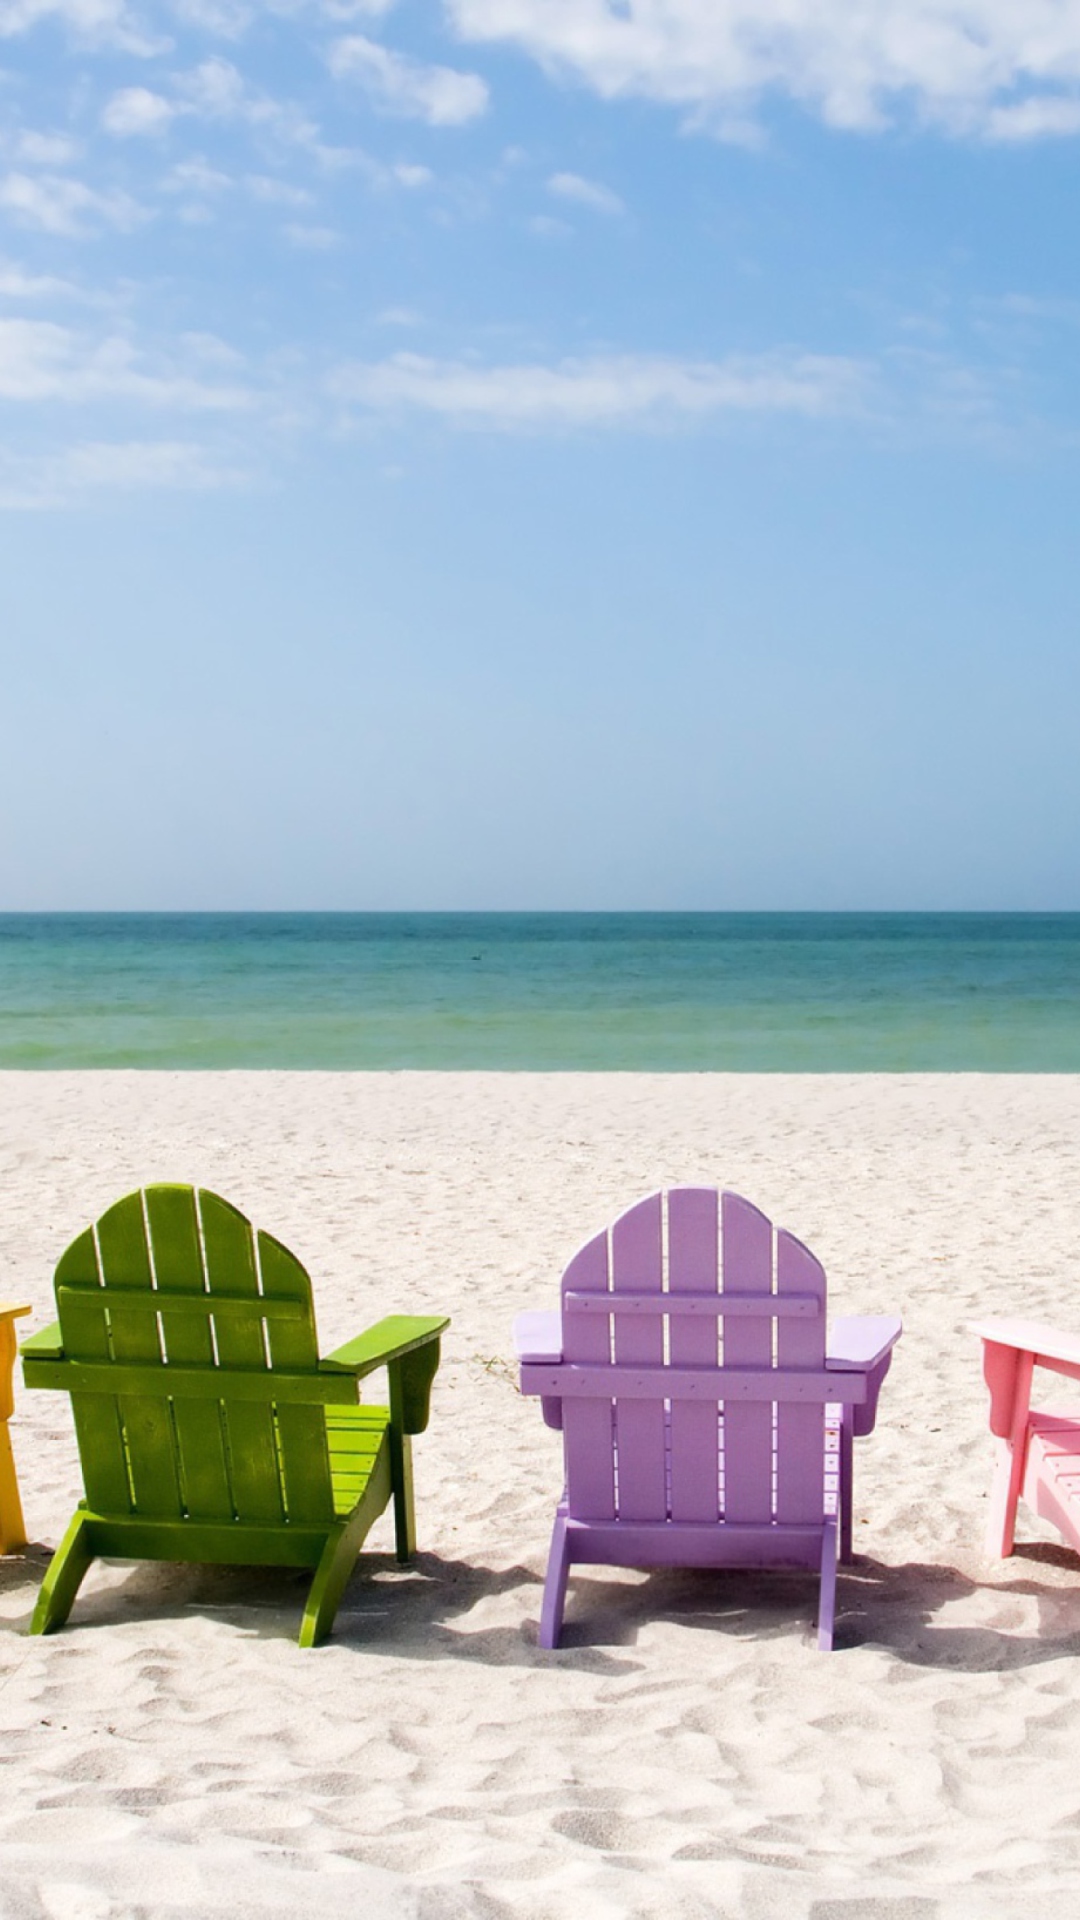 Обои Beach Chairs 1080x1920